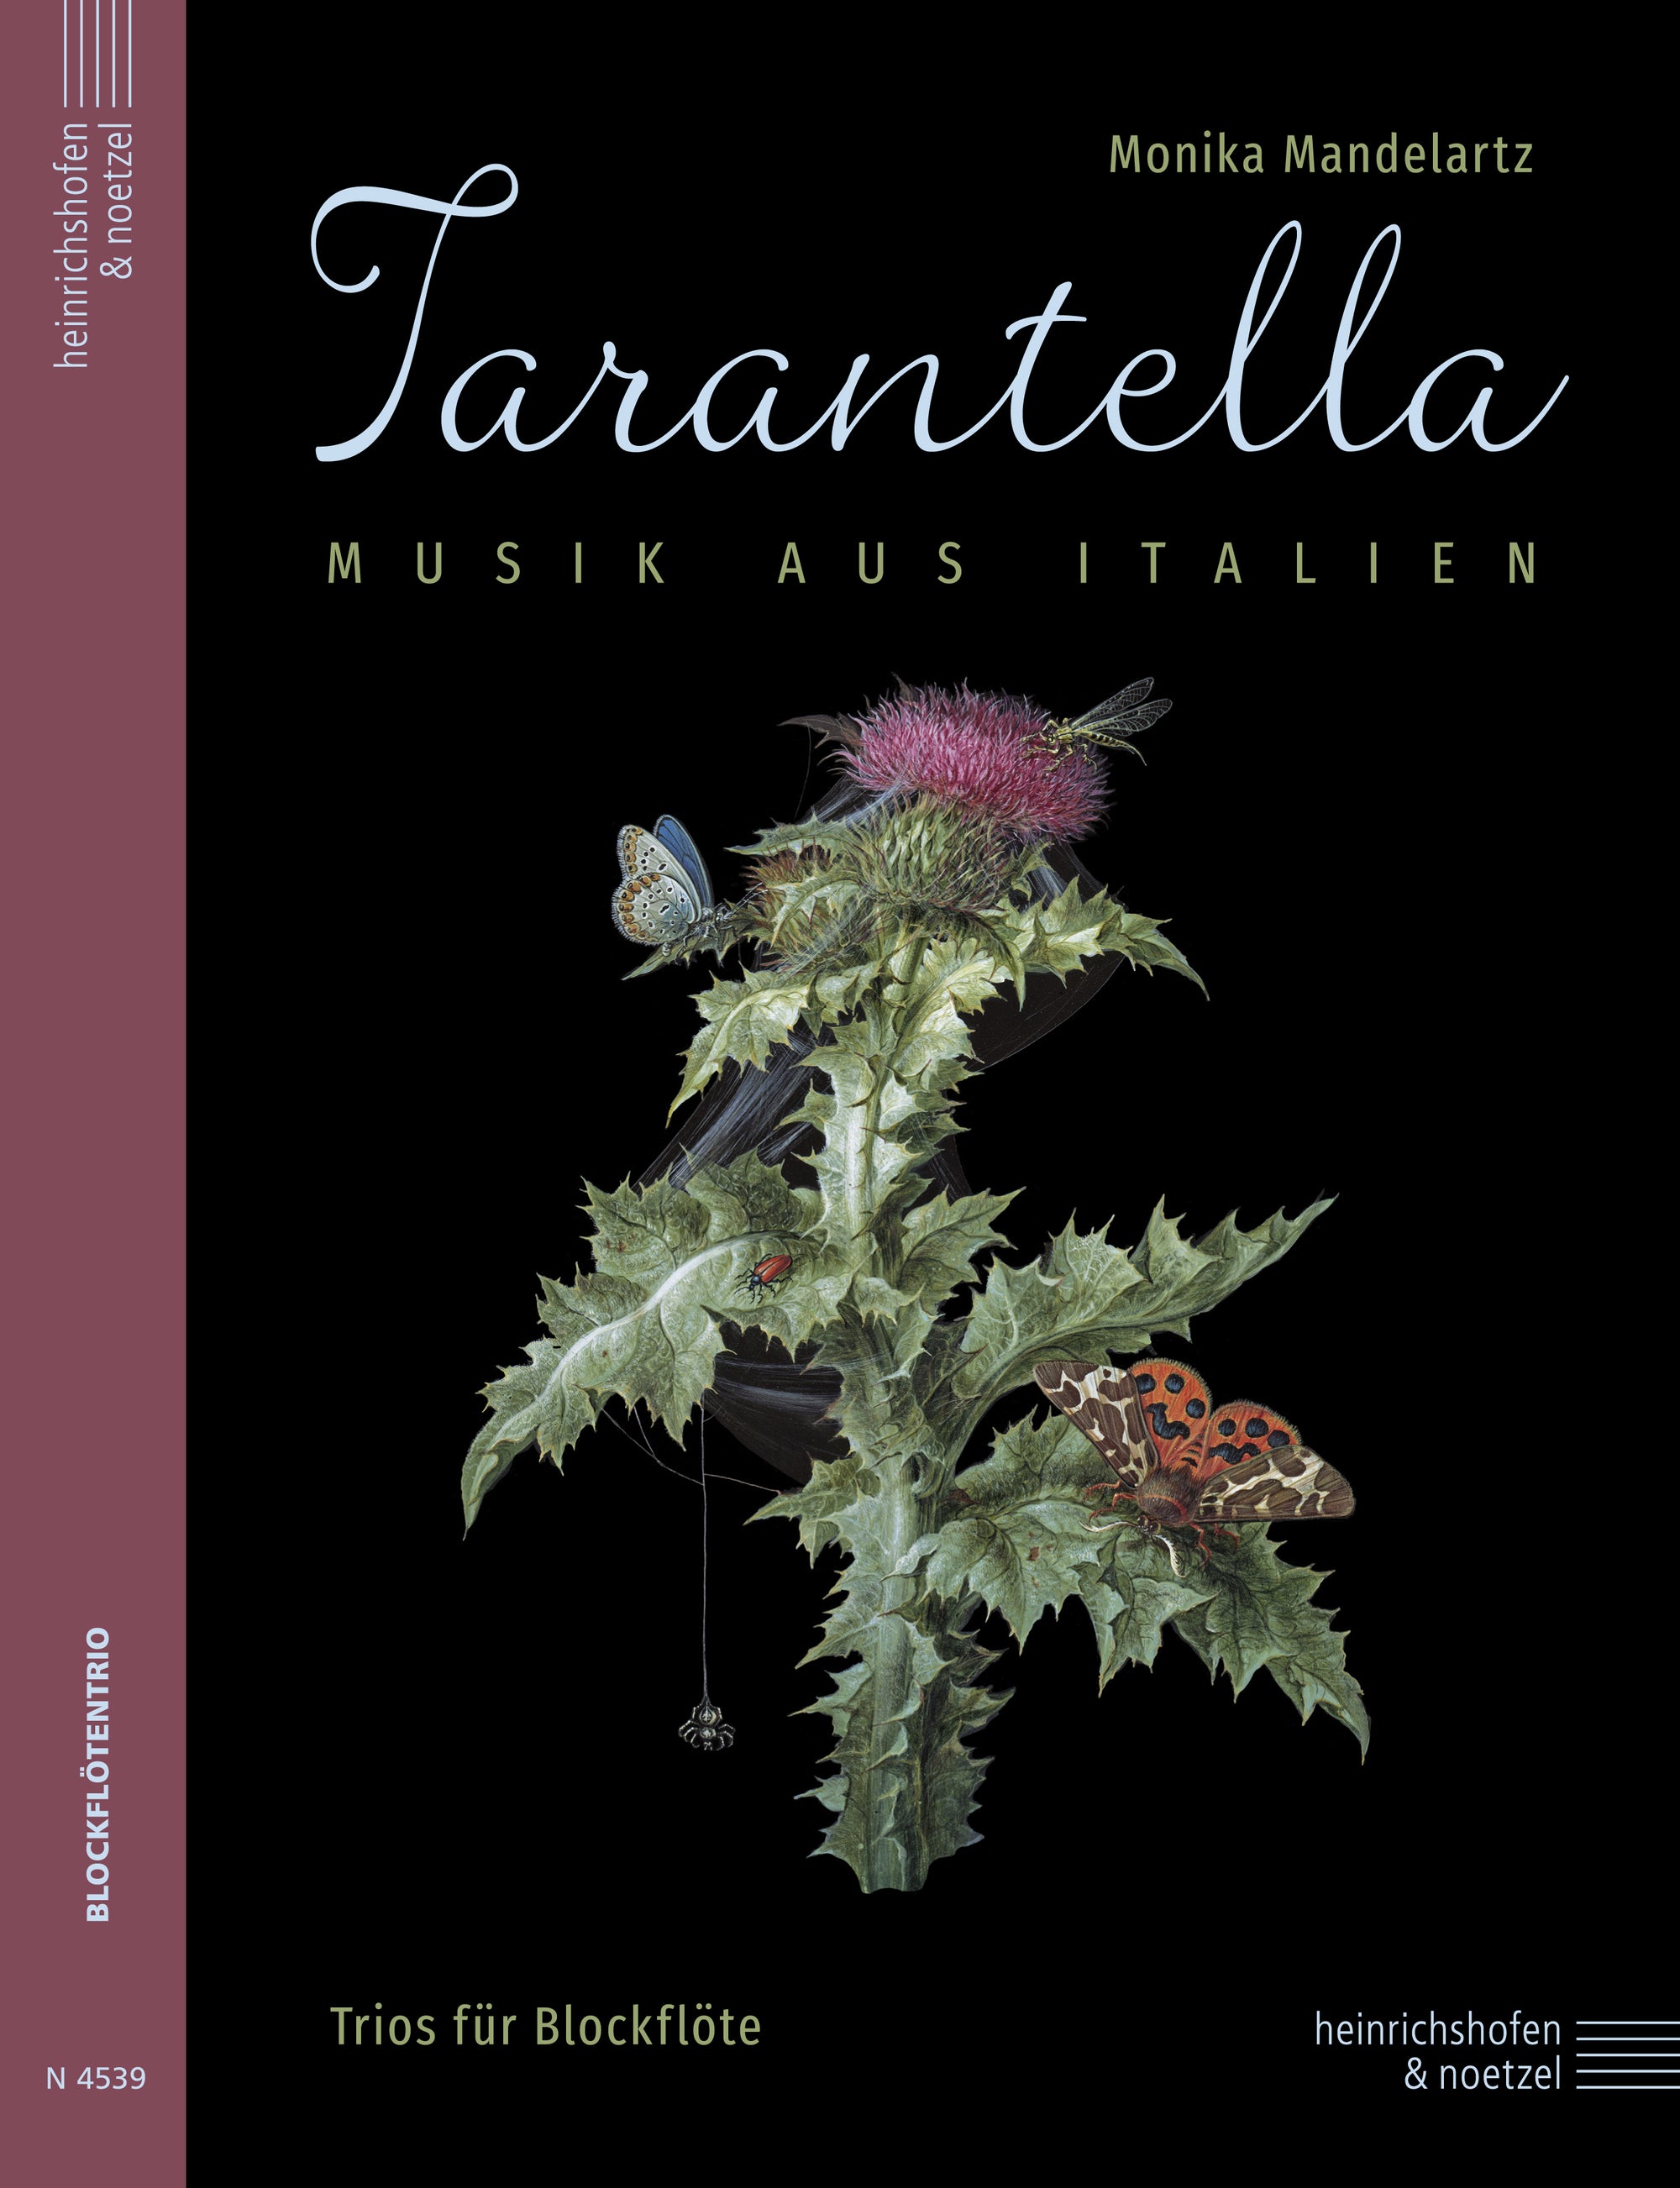 Tarantella - Music from Italy